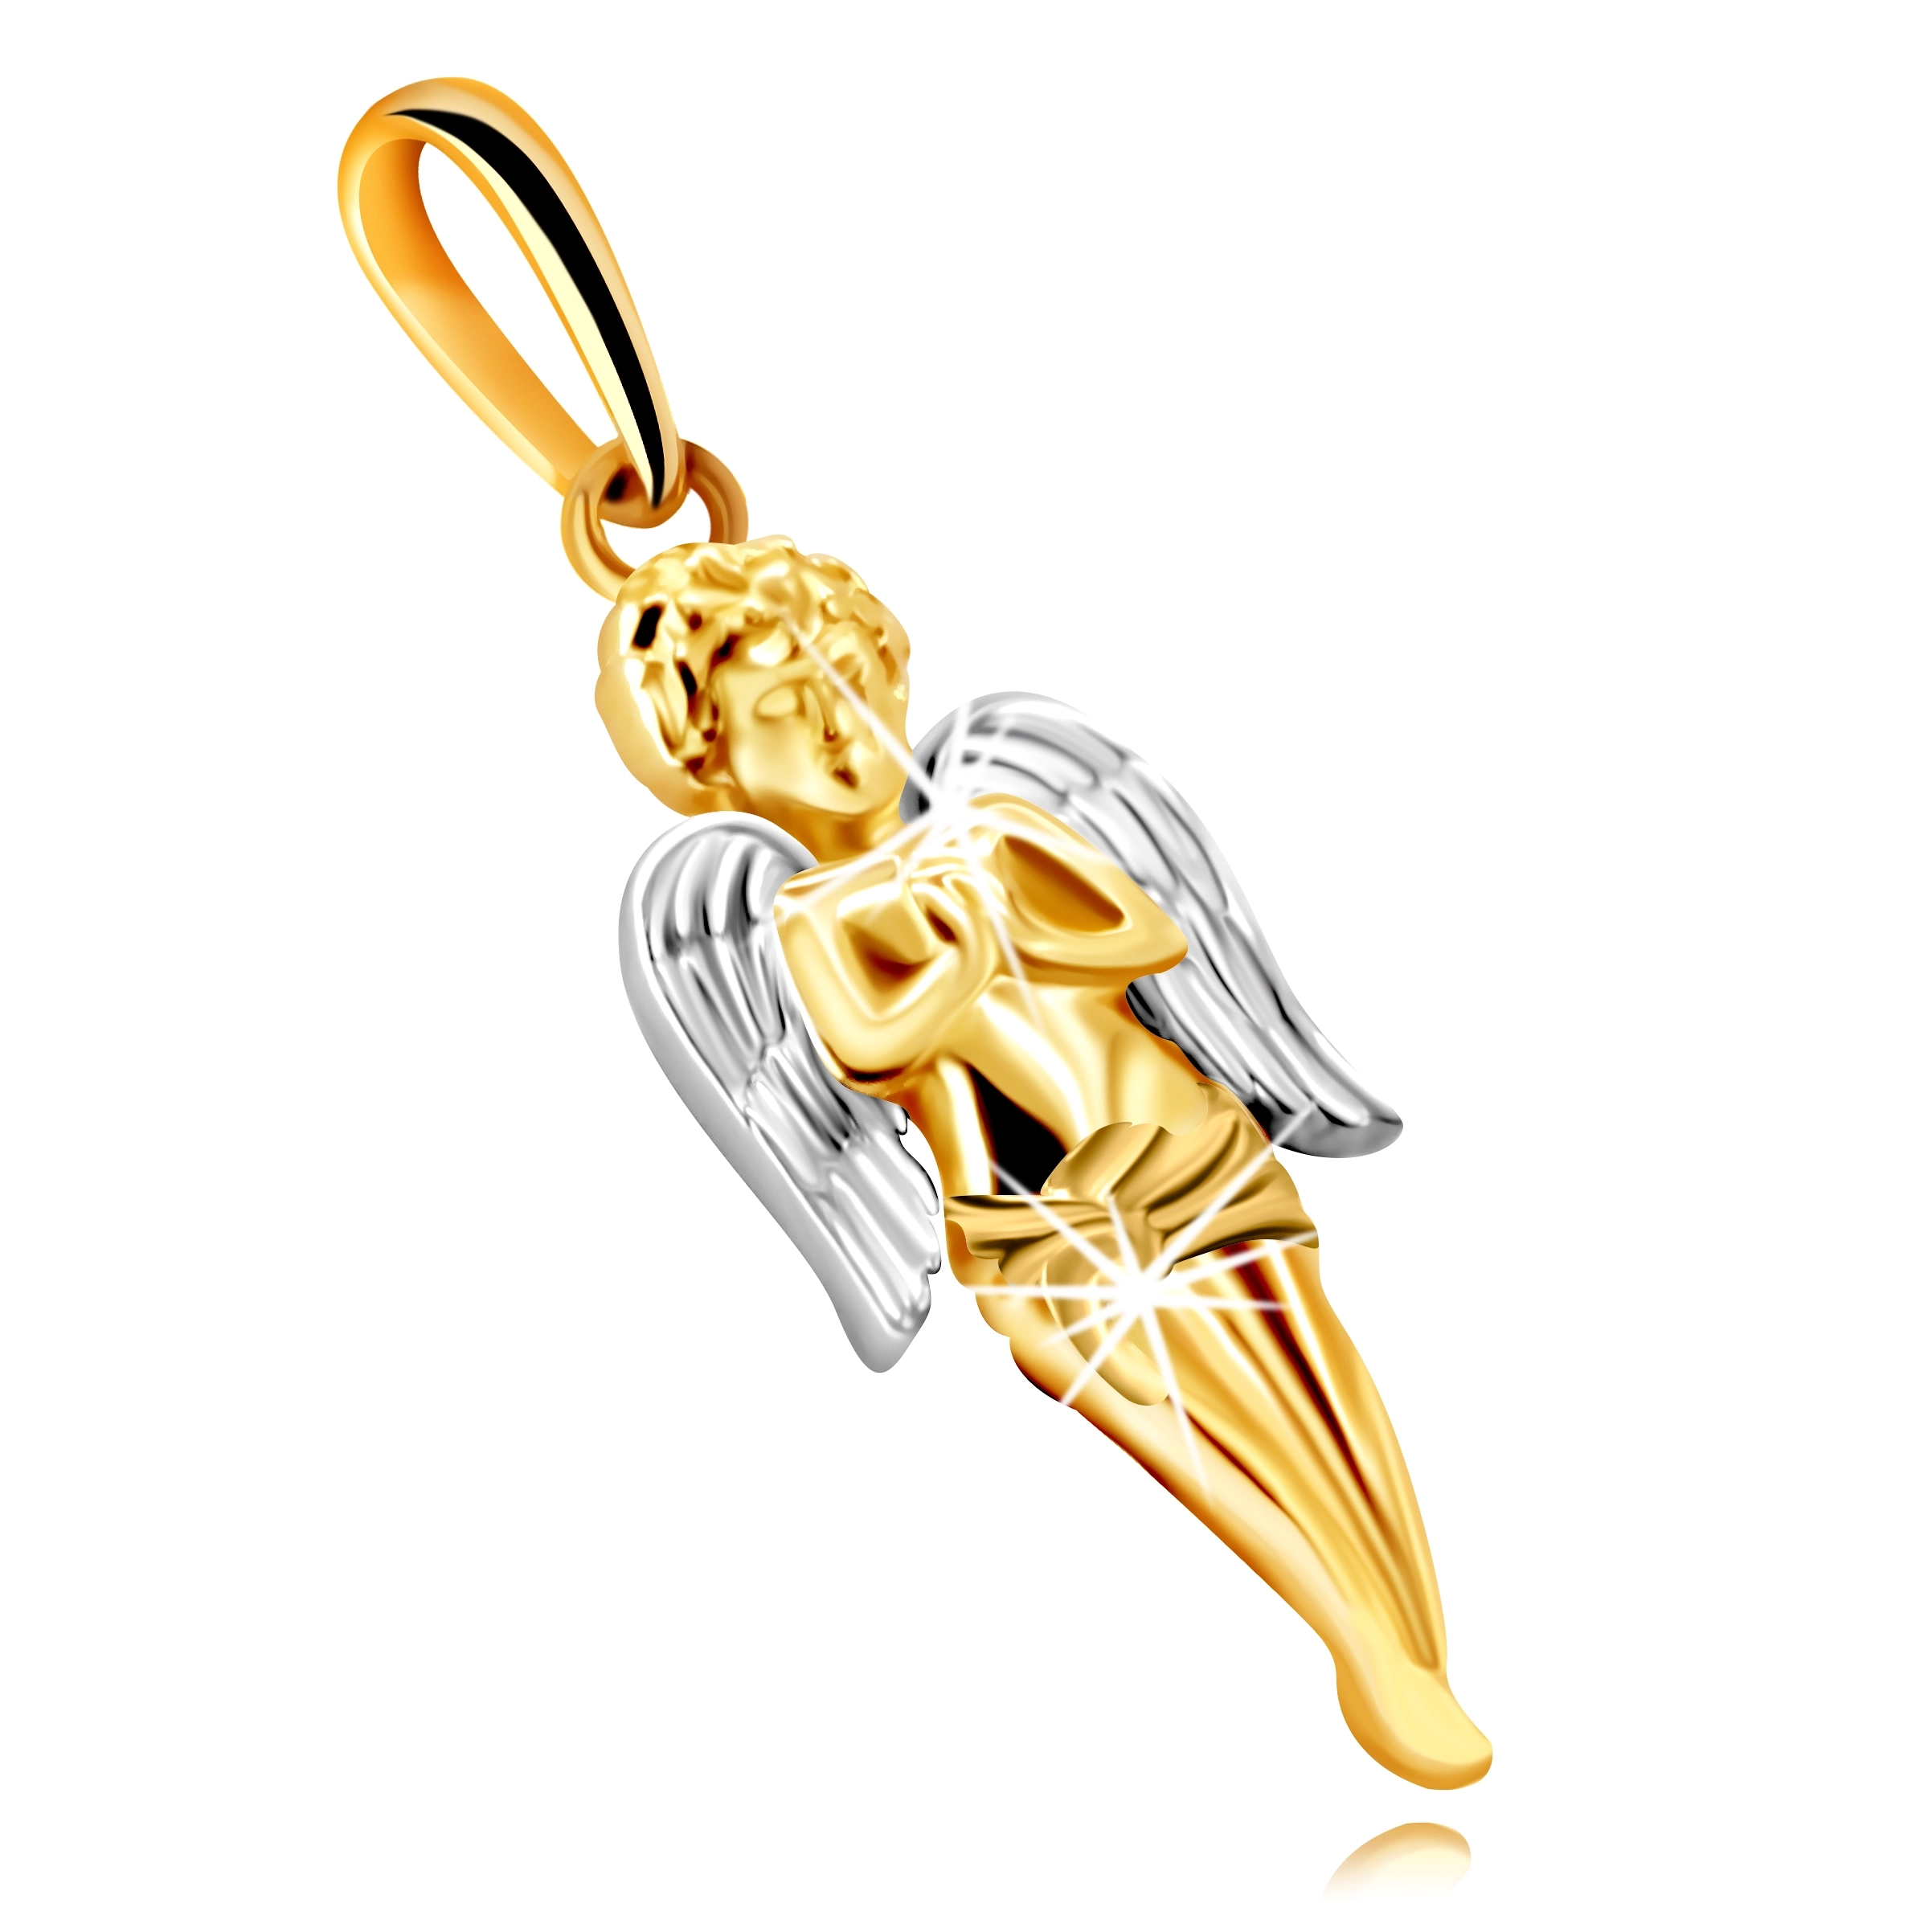 Přívěsek z kombinovaného 585 zlata - modlící se anděl s křídly